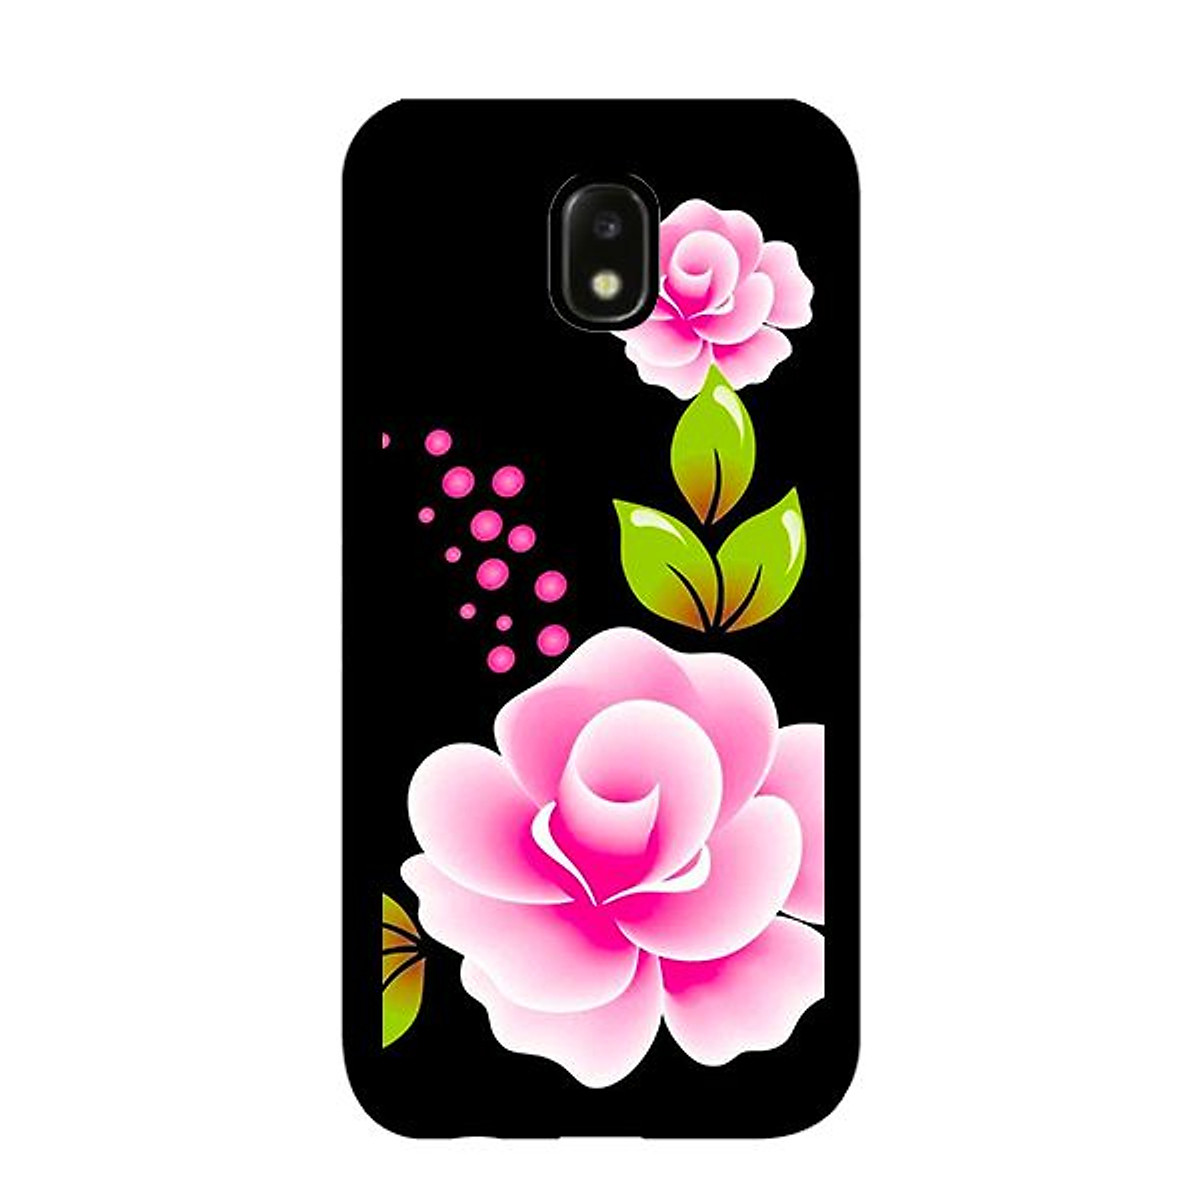 Nếu bạn muốn tạo ra một thiết kế độc đáo cho chiếc smartphone của mình, bạn không thể bỏ qua Ốp lưng Samsung Galaxy J3 Pro nền đen hoa hồng rực rỡ. Với chi tiết hoa hồng nổi bật, ống kính chính xác và độ bền cao, hãy thêm cây hoa vĩnh cửu vào chiếc điện thoại để tăng thêm sự nổi bật cho màn hình!